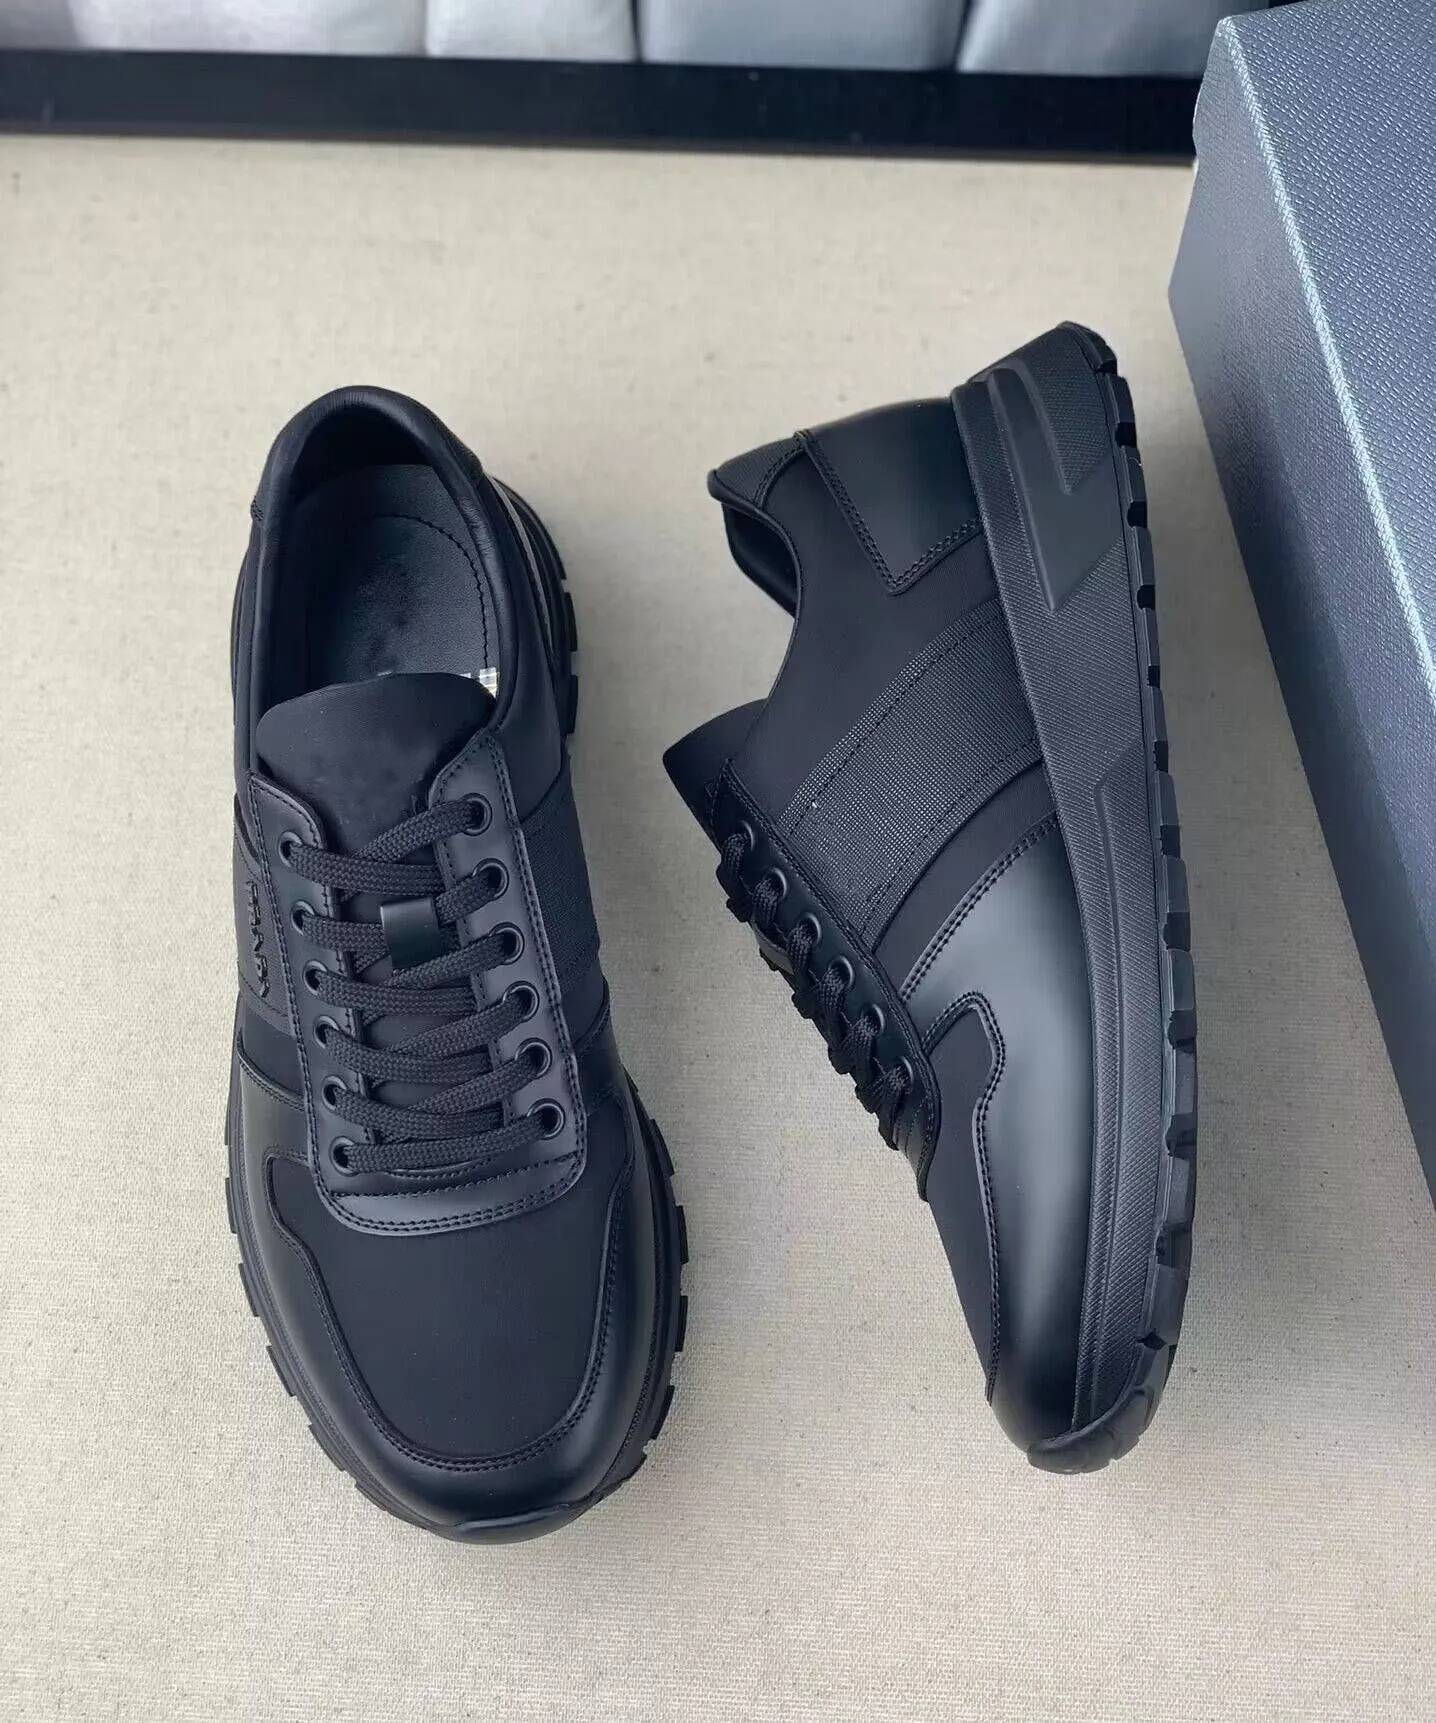 24S Yaz Yürüyüşü Lüks Prax 01 Sneakers Ayakkabı Yeniden Nynylon Deri Siyah Erkekler B22 Tıknaz Kauçuk Eğitmenler Mesh Partisi Elbise Koşucu Kaykay Yürüyüş Paten Ayakkabı